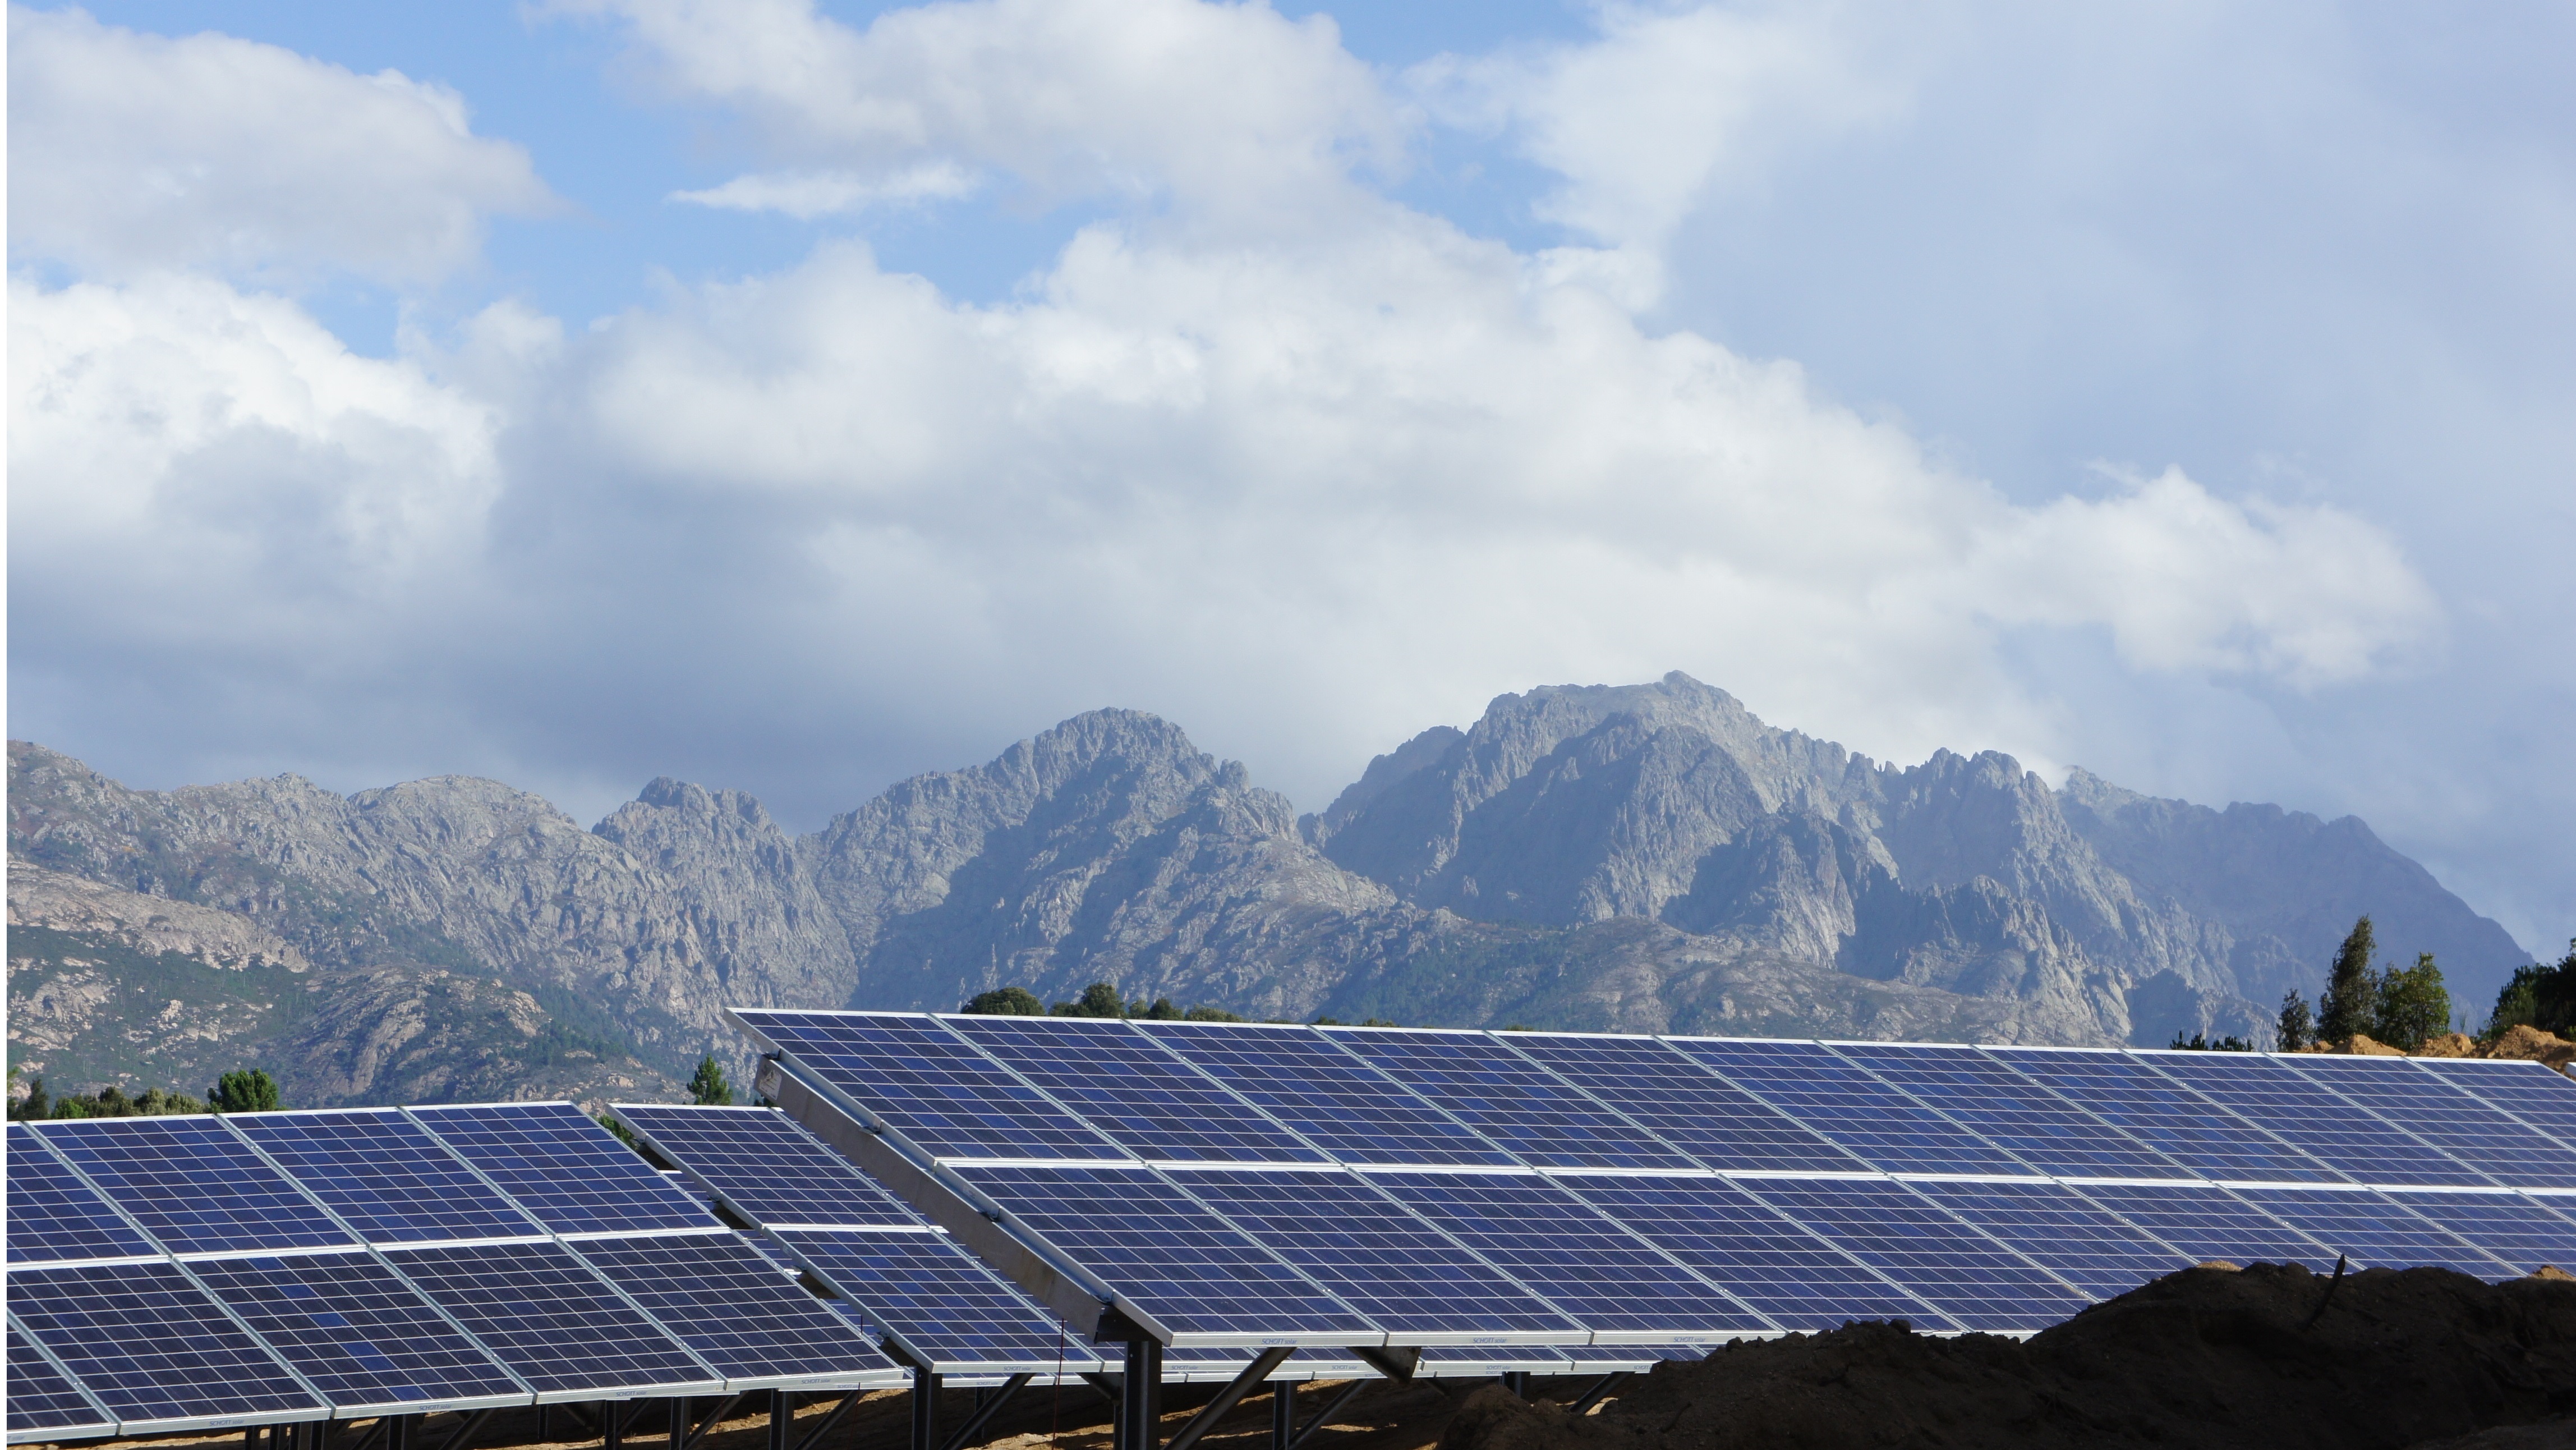 12.12.2013 - SolarKapital wechselt O&M-Dienstleister auf Korsika